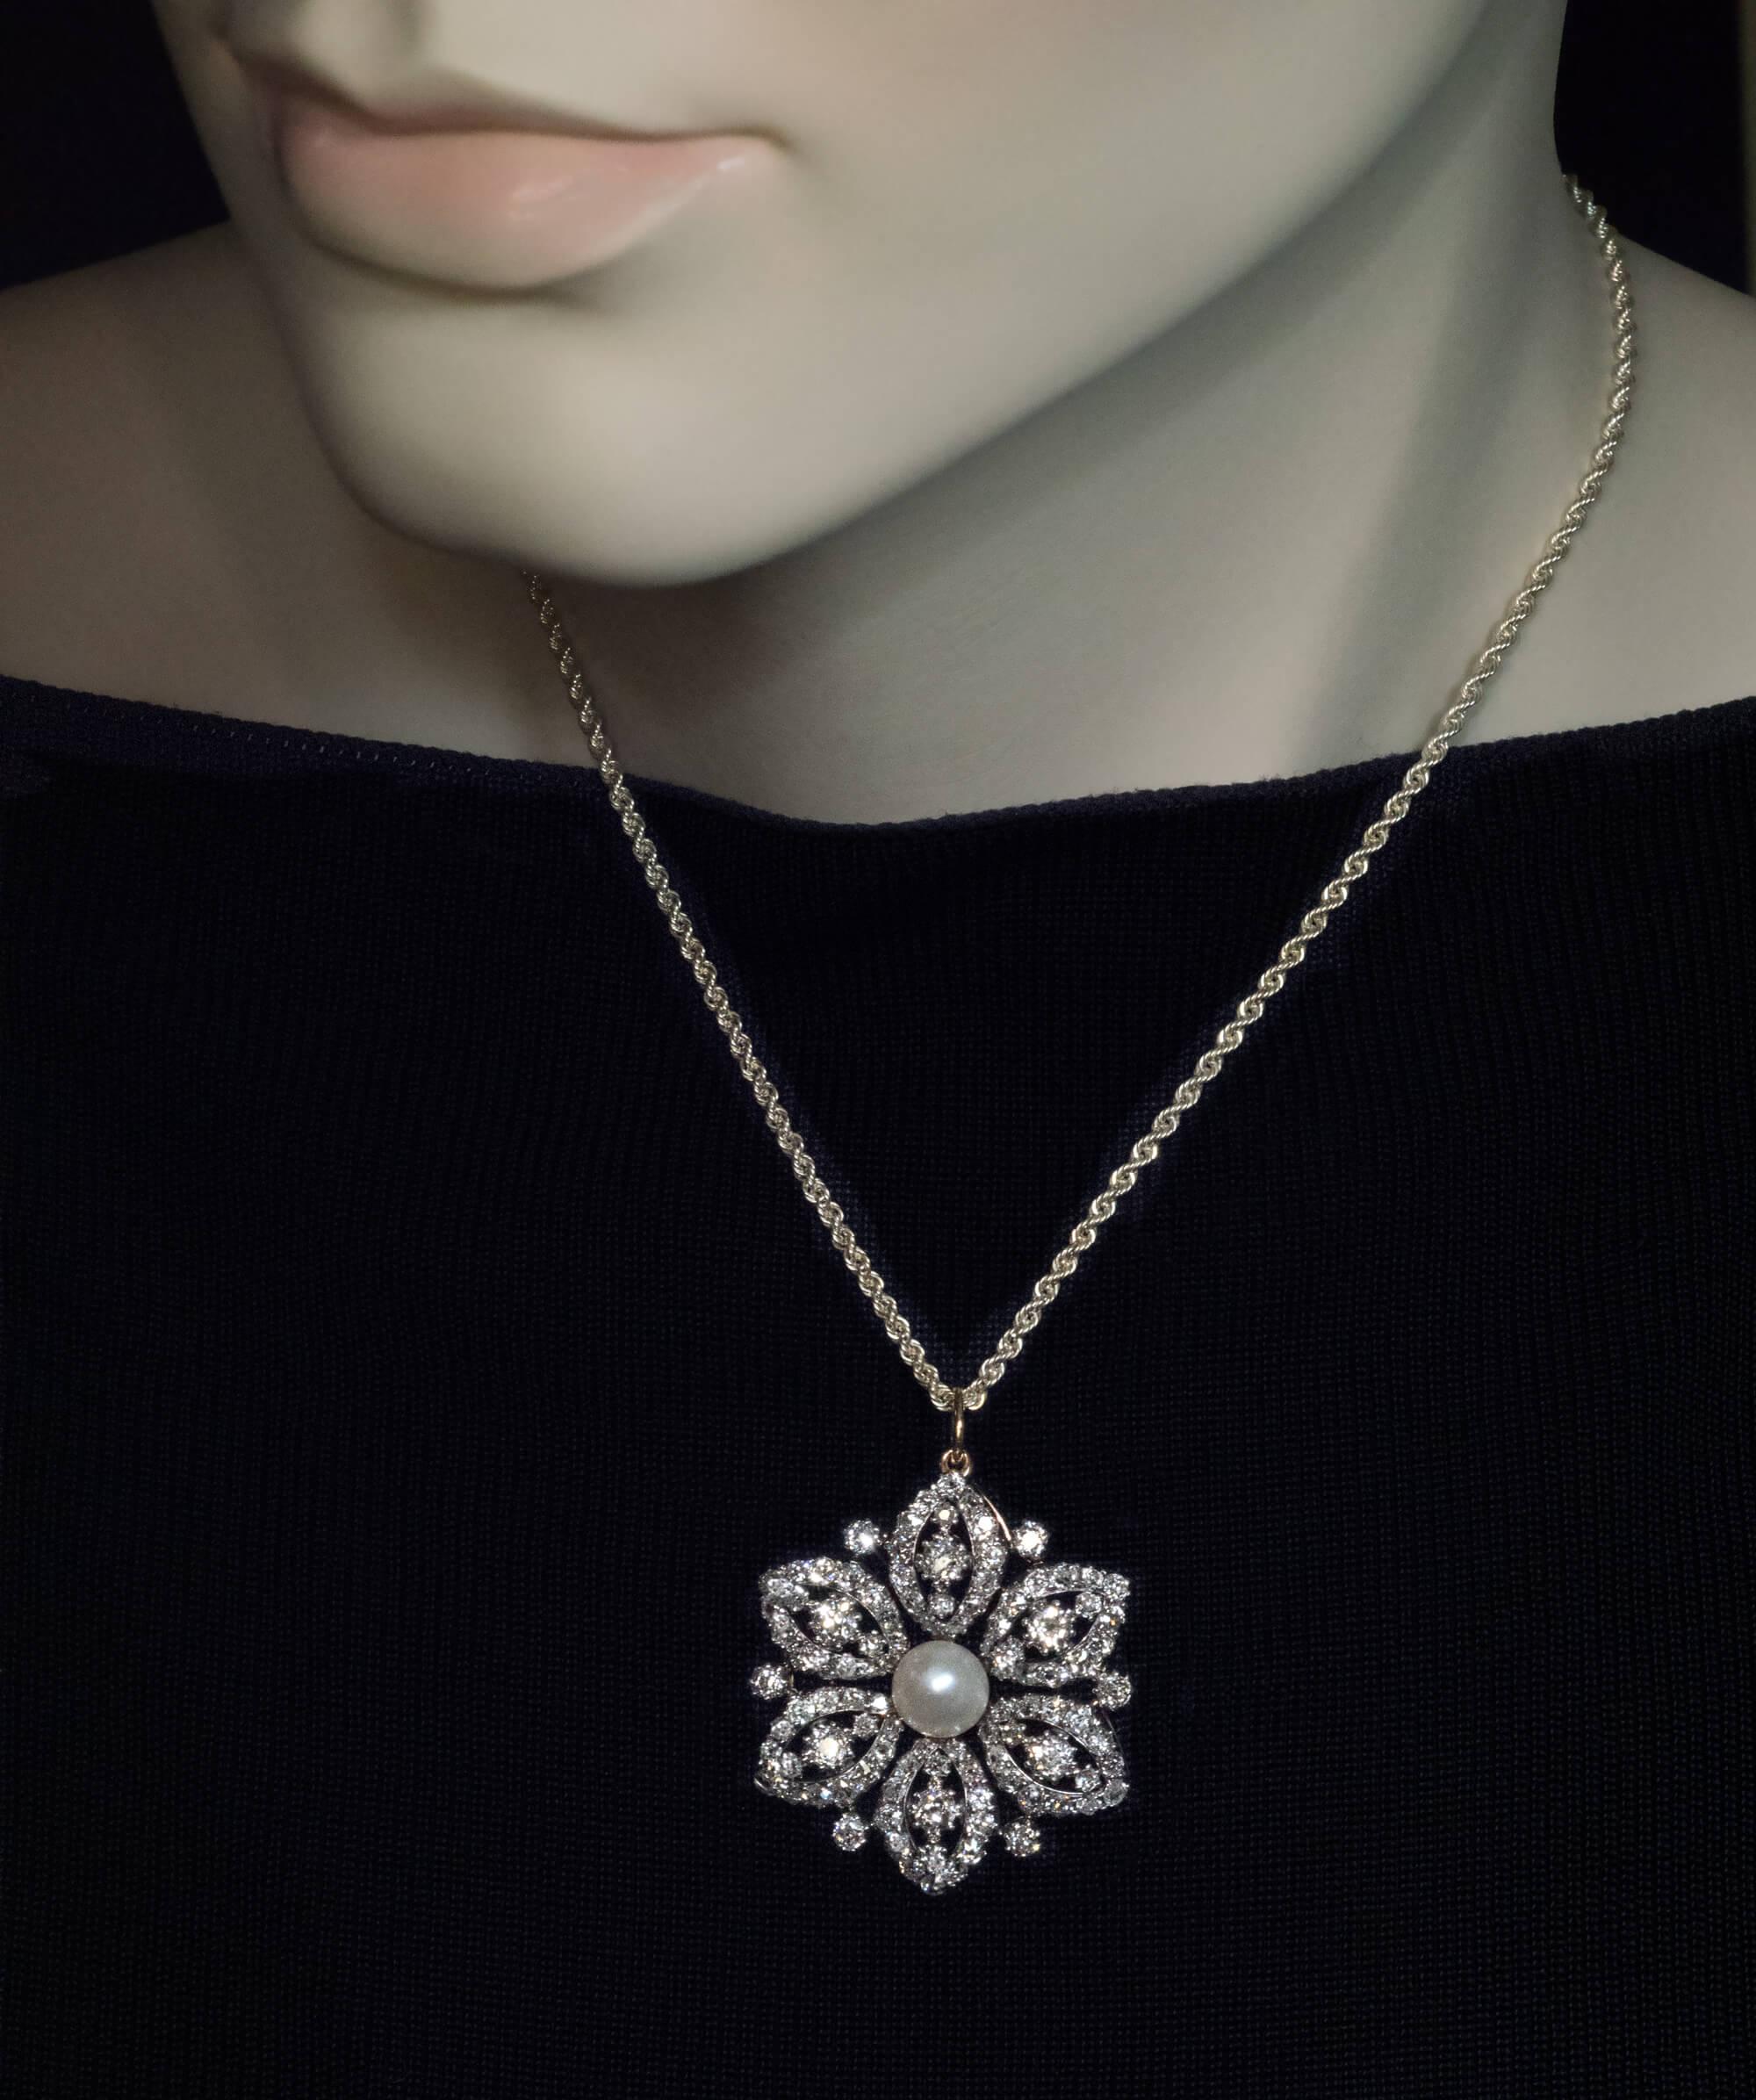 Circa 1890s
Cette élégante broche / pendentif antique est conçue comme une tête de fleur avec une perle de 8,5 mm au centre. Il est finement confectionné en or 14K recouvert d'argent (face avant - argent, face arrière - or). Les pétales ajourés sont